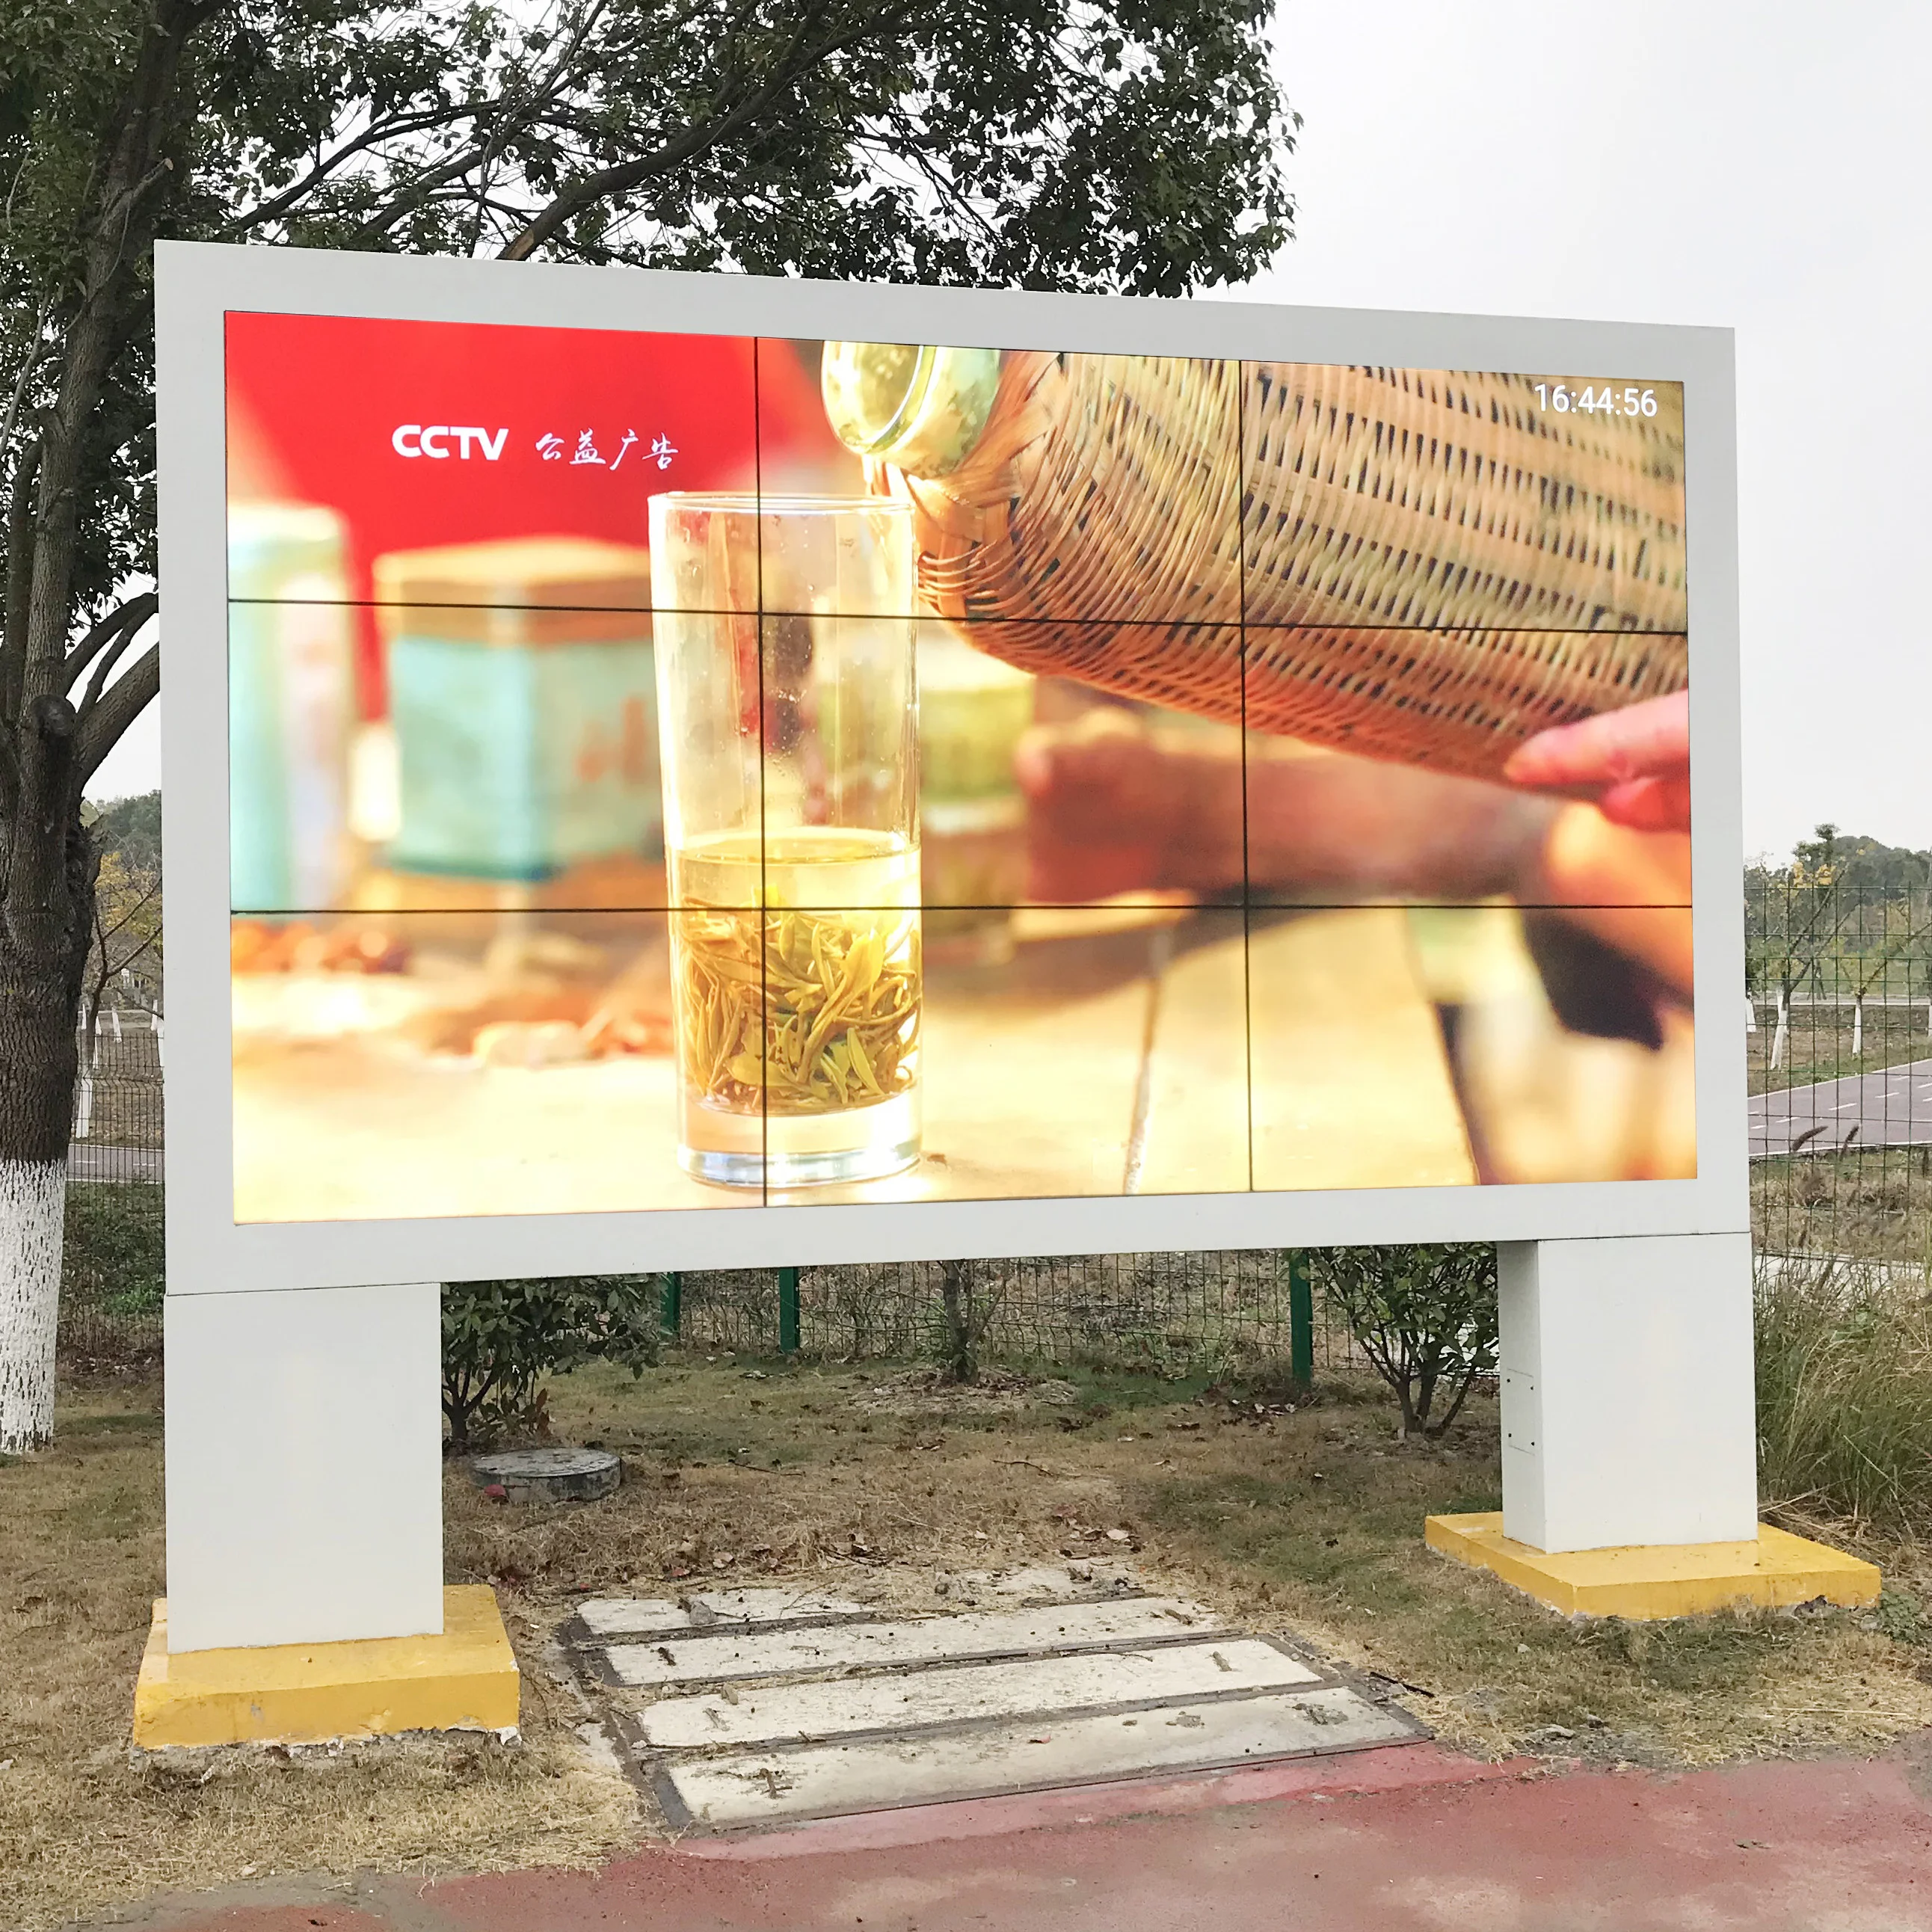 Dijital açık billboard lcd video duvar TV reklam board LG veya samsung paneli ile eşit 5000 nit led ekran